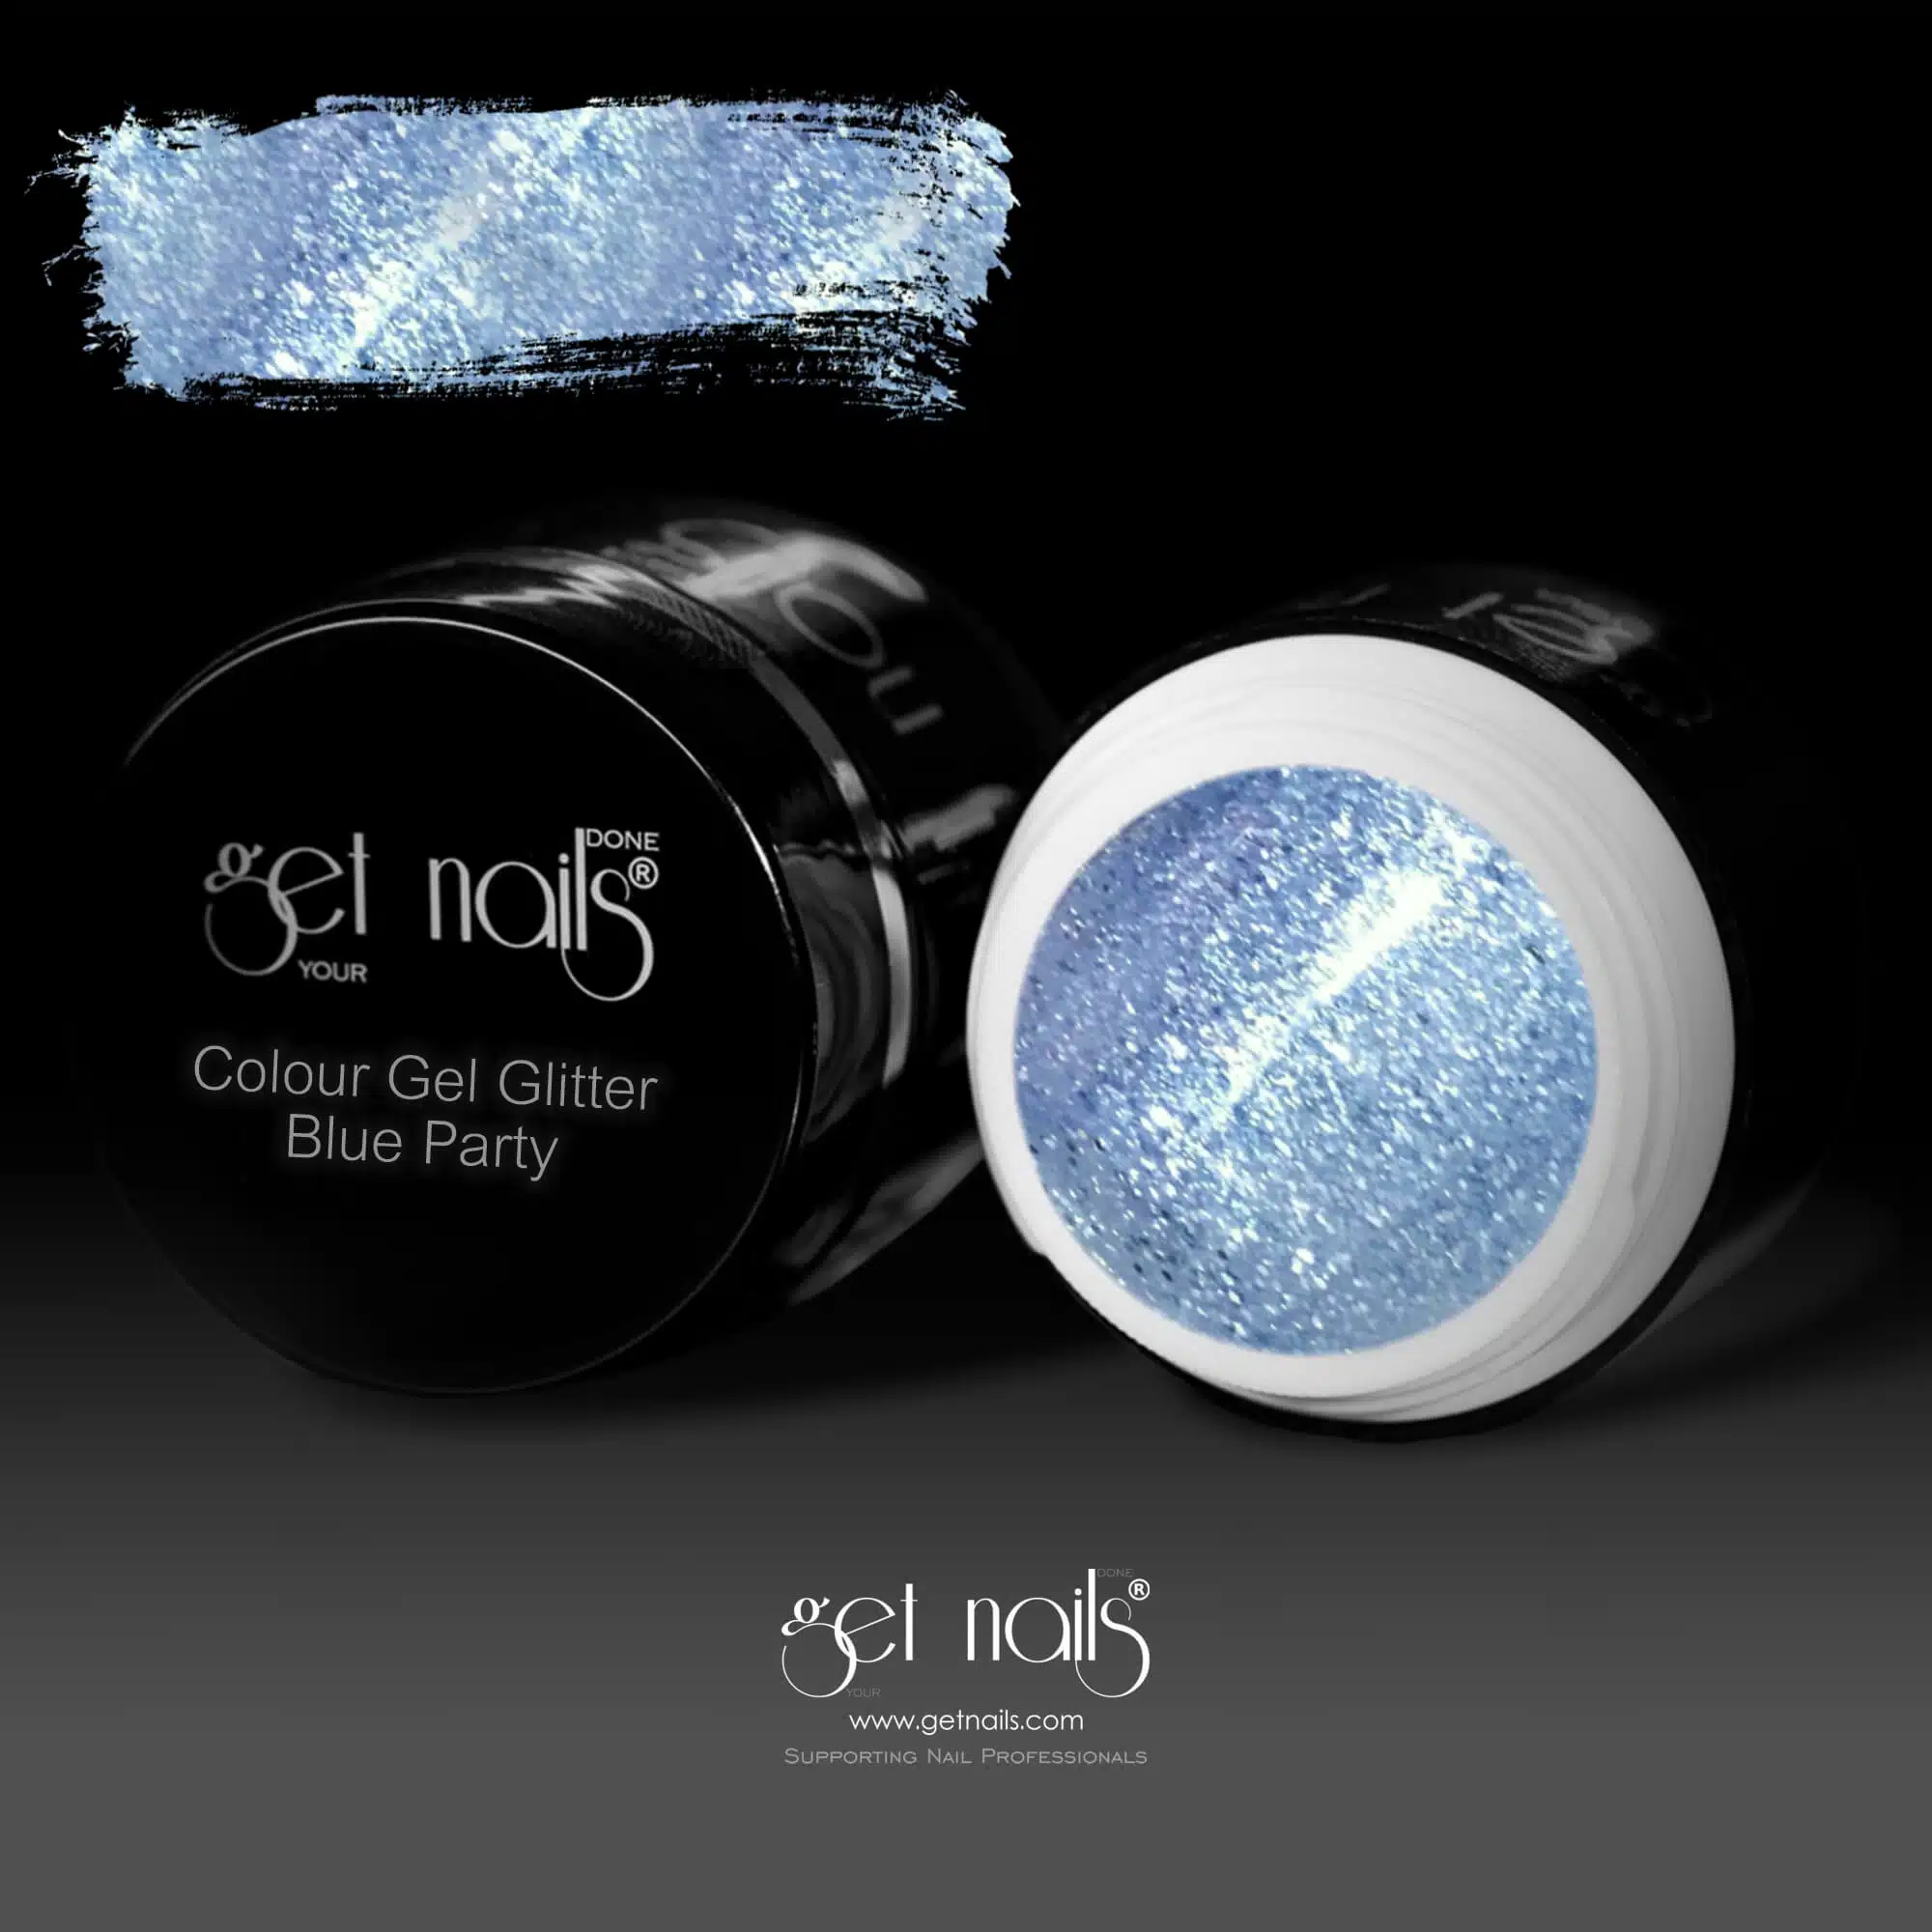 Get Nails Austria - Цветной гель Glitter Blue Party 5g